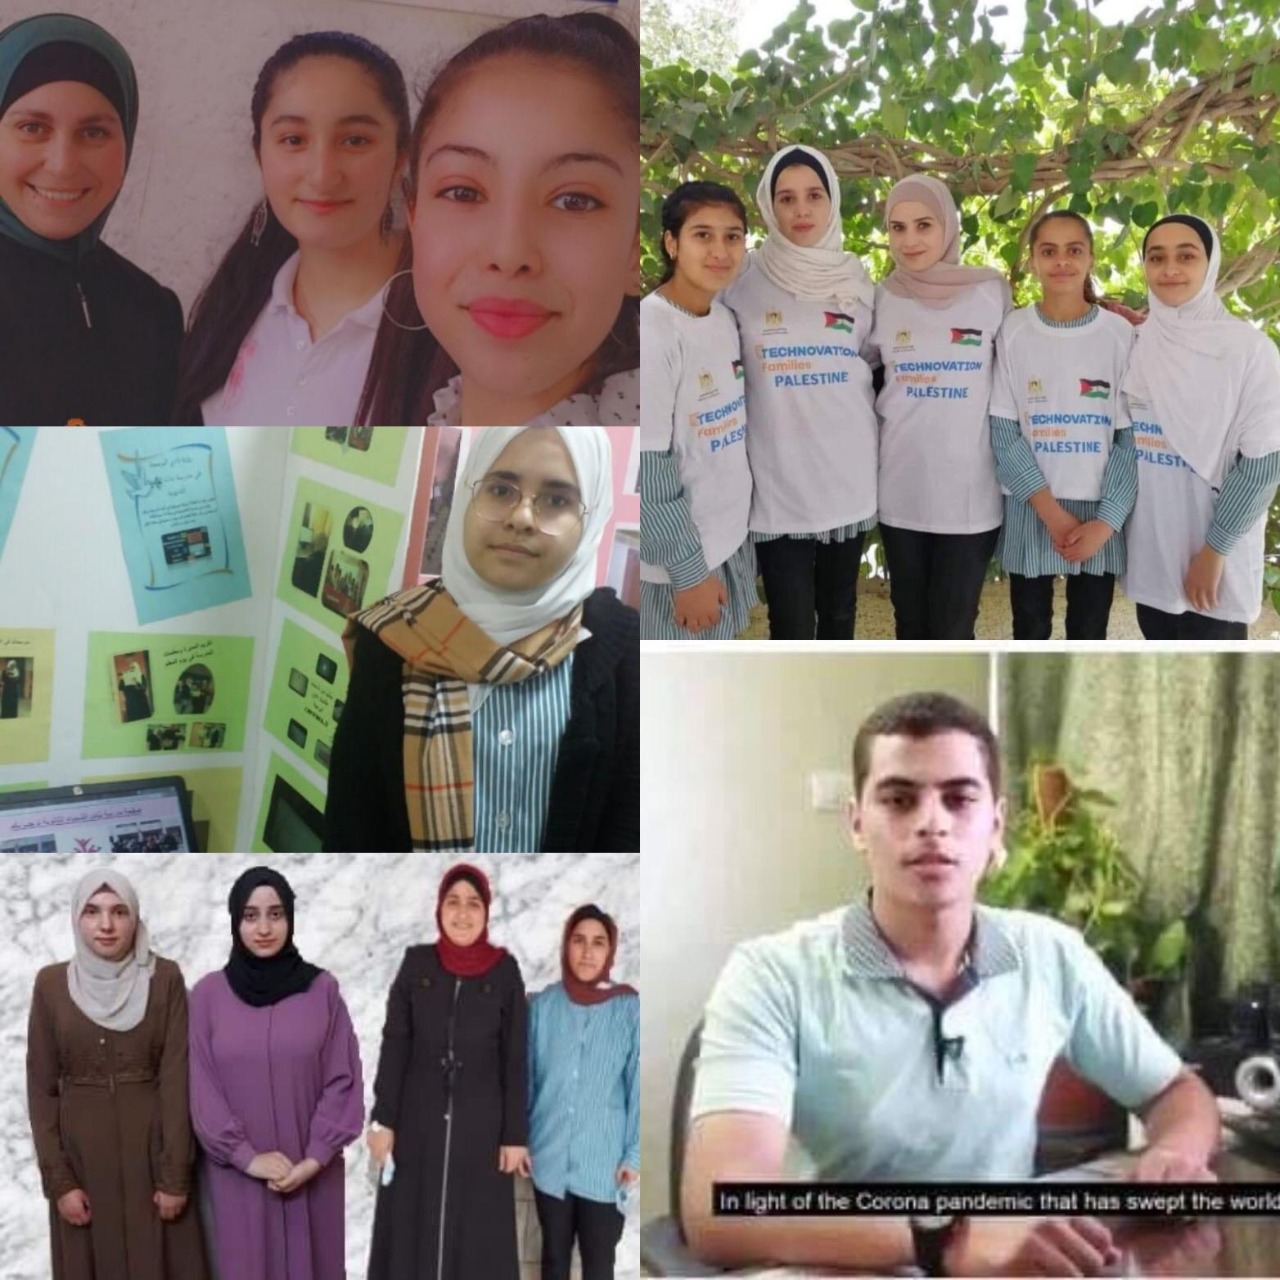  التربية والتعليم:  فوز فلسطين بخمسة مشاريع بمسابقة دولية للبرمجة